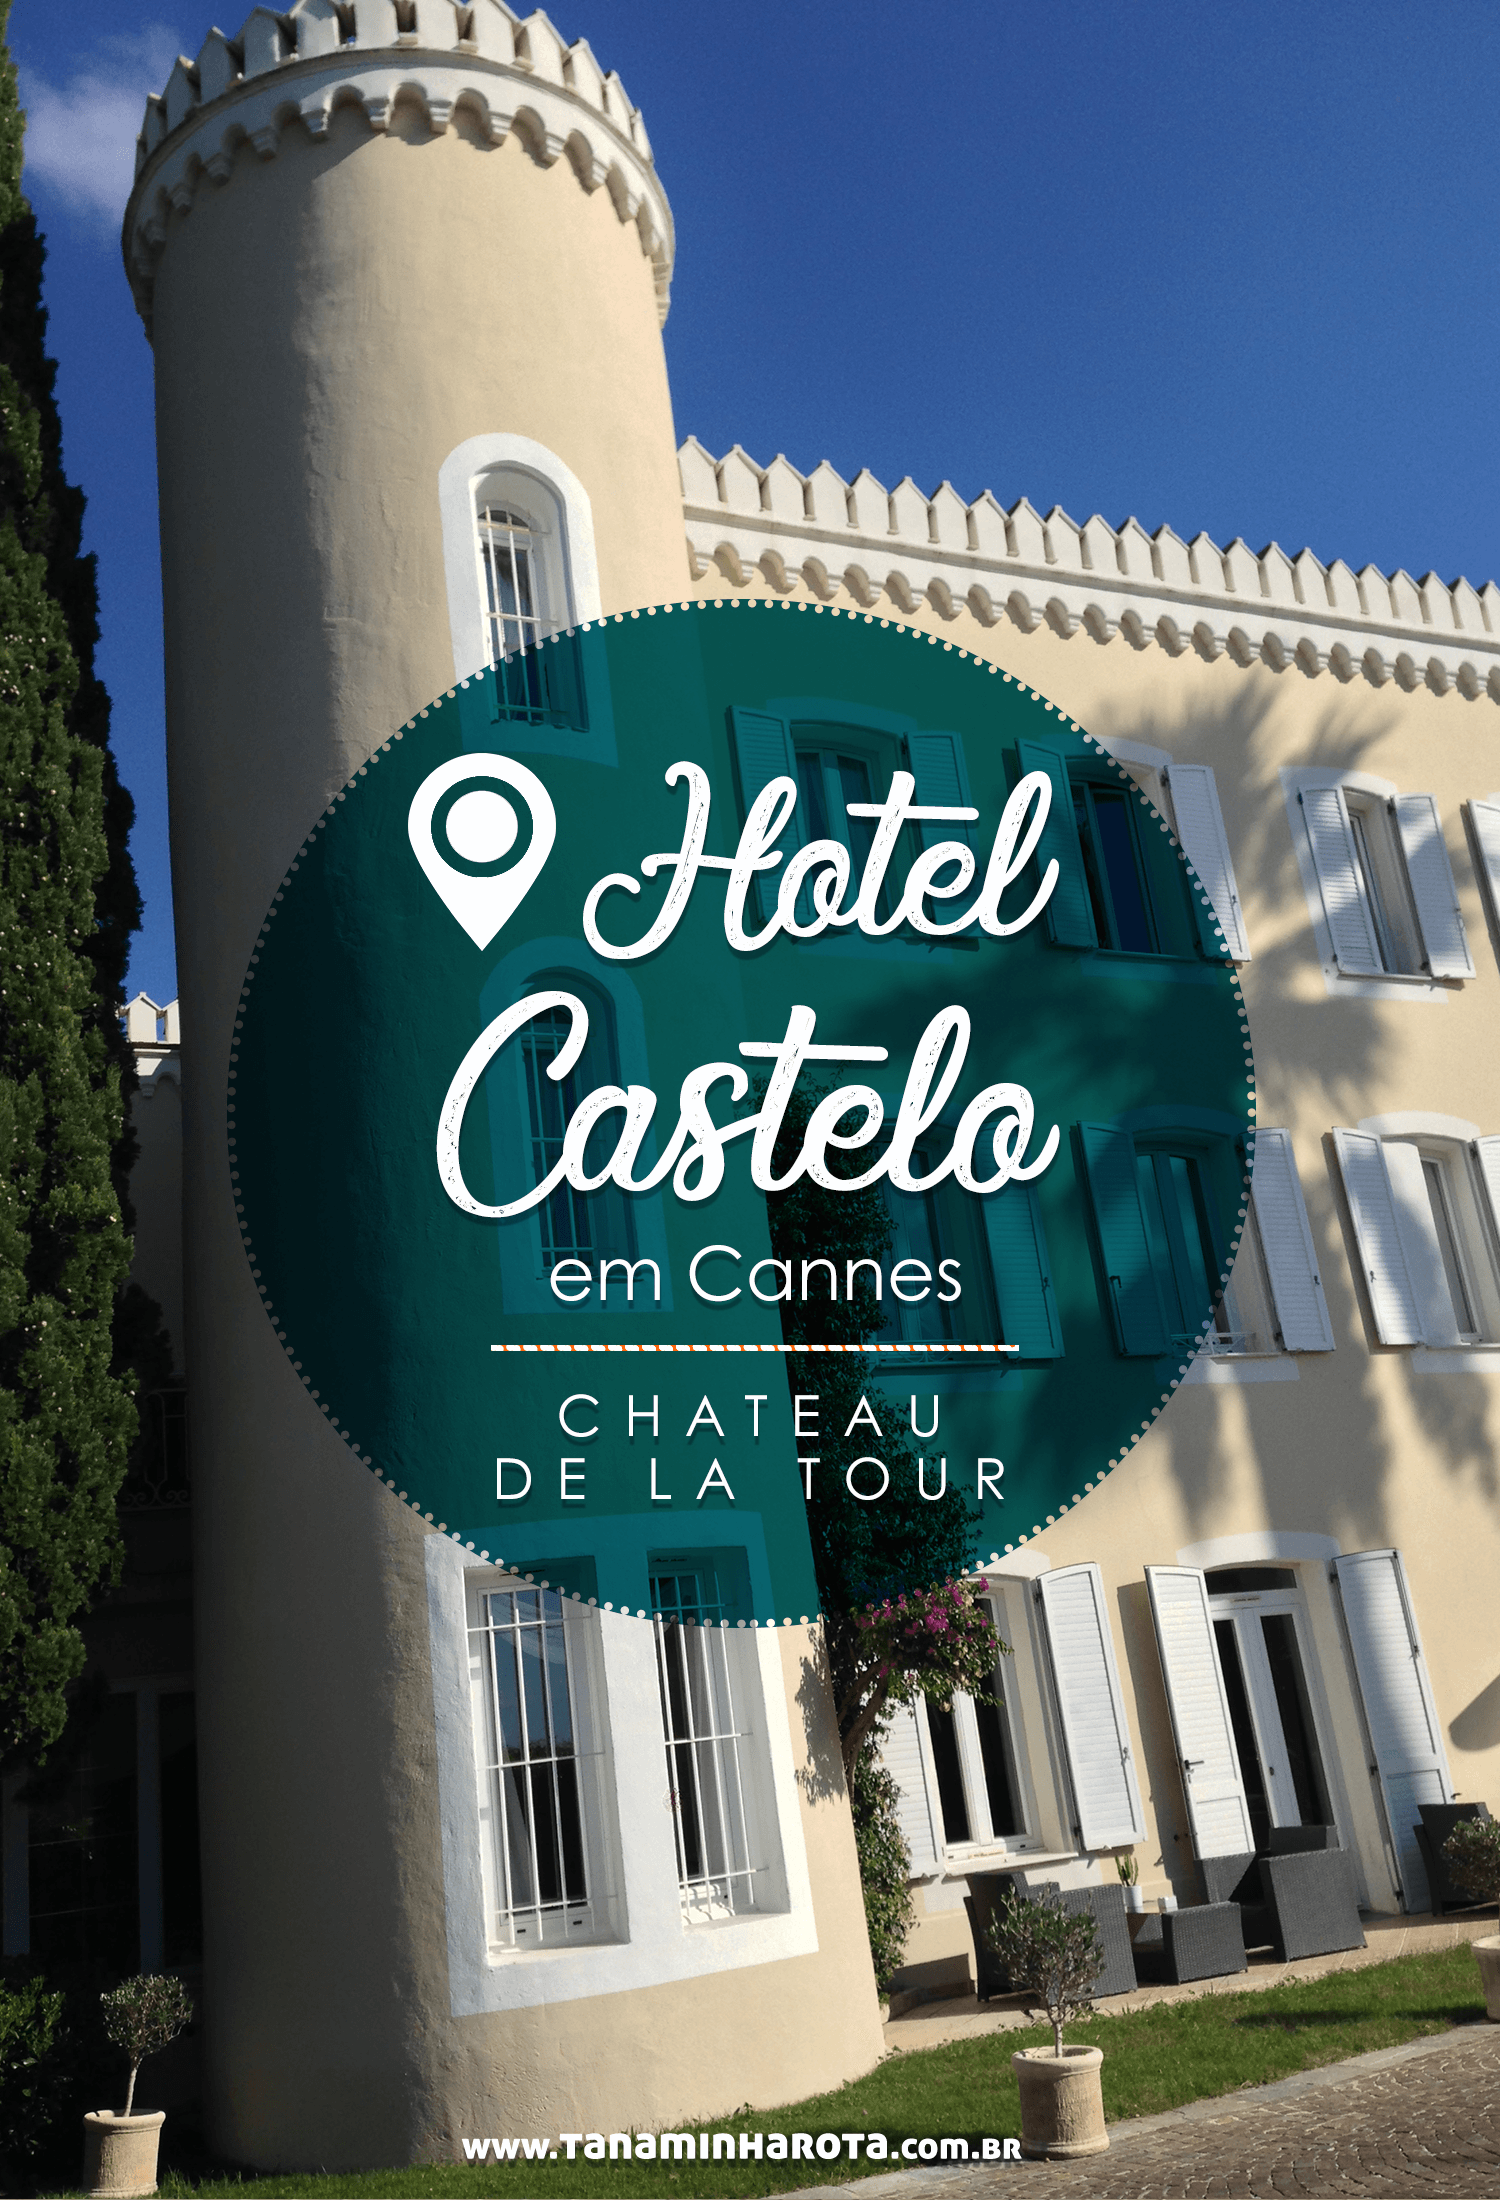 Que tal se hospedar em um castelo? Leia mais sobre um hotel em Cannes incrível, o Chateau de La Tour! #cannes #frança #rivierafrancesa #europa #viagem